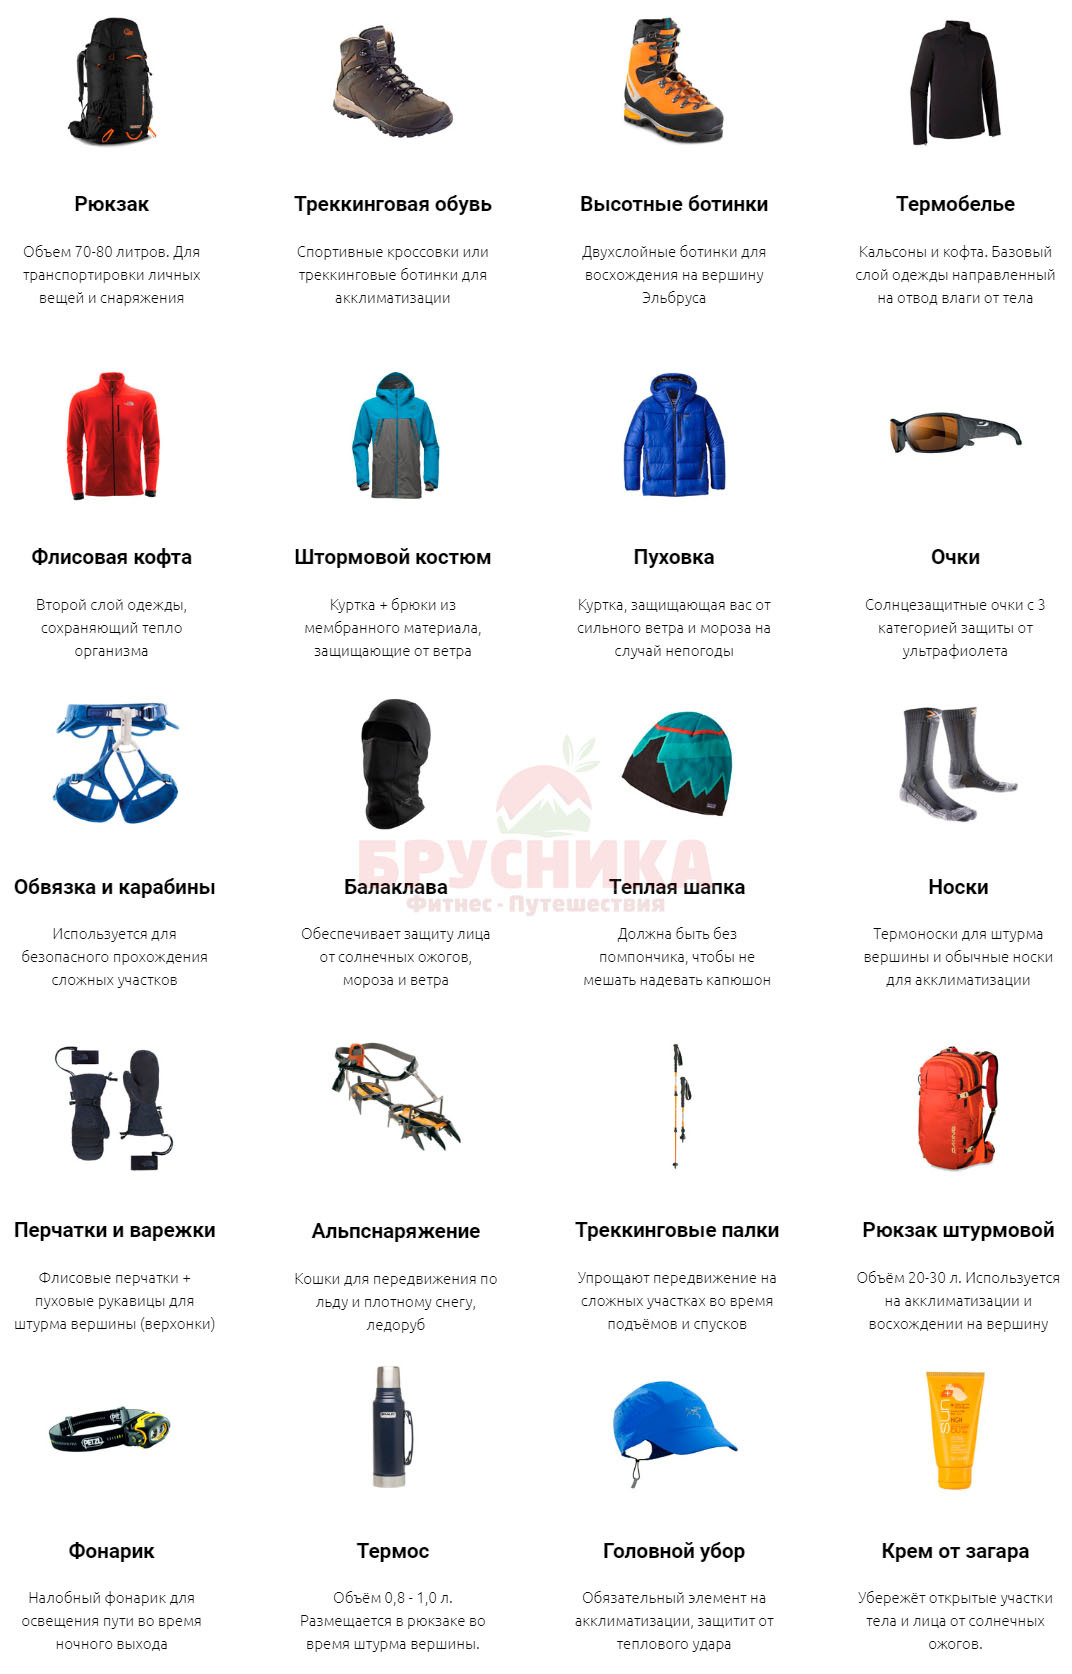 Список снаряжения для восхождения на Эльбрус